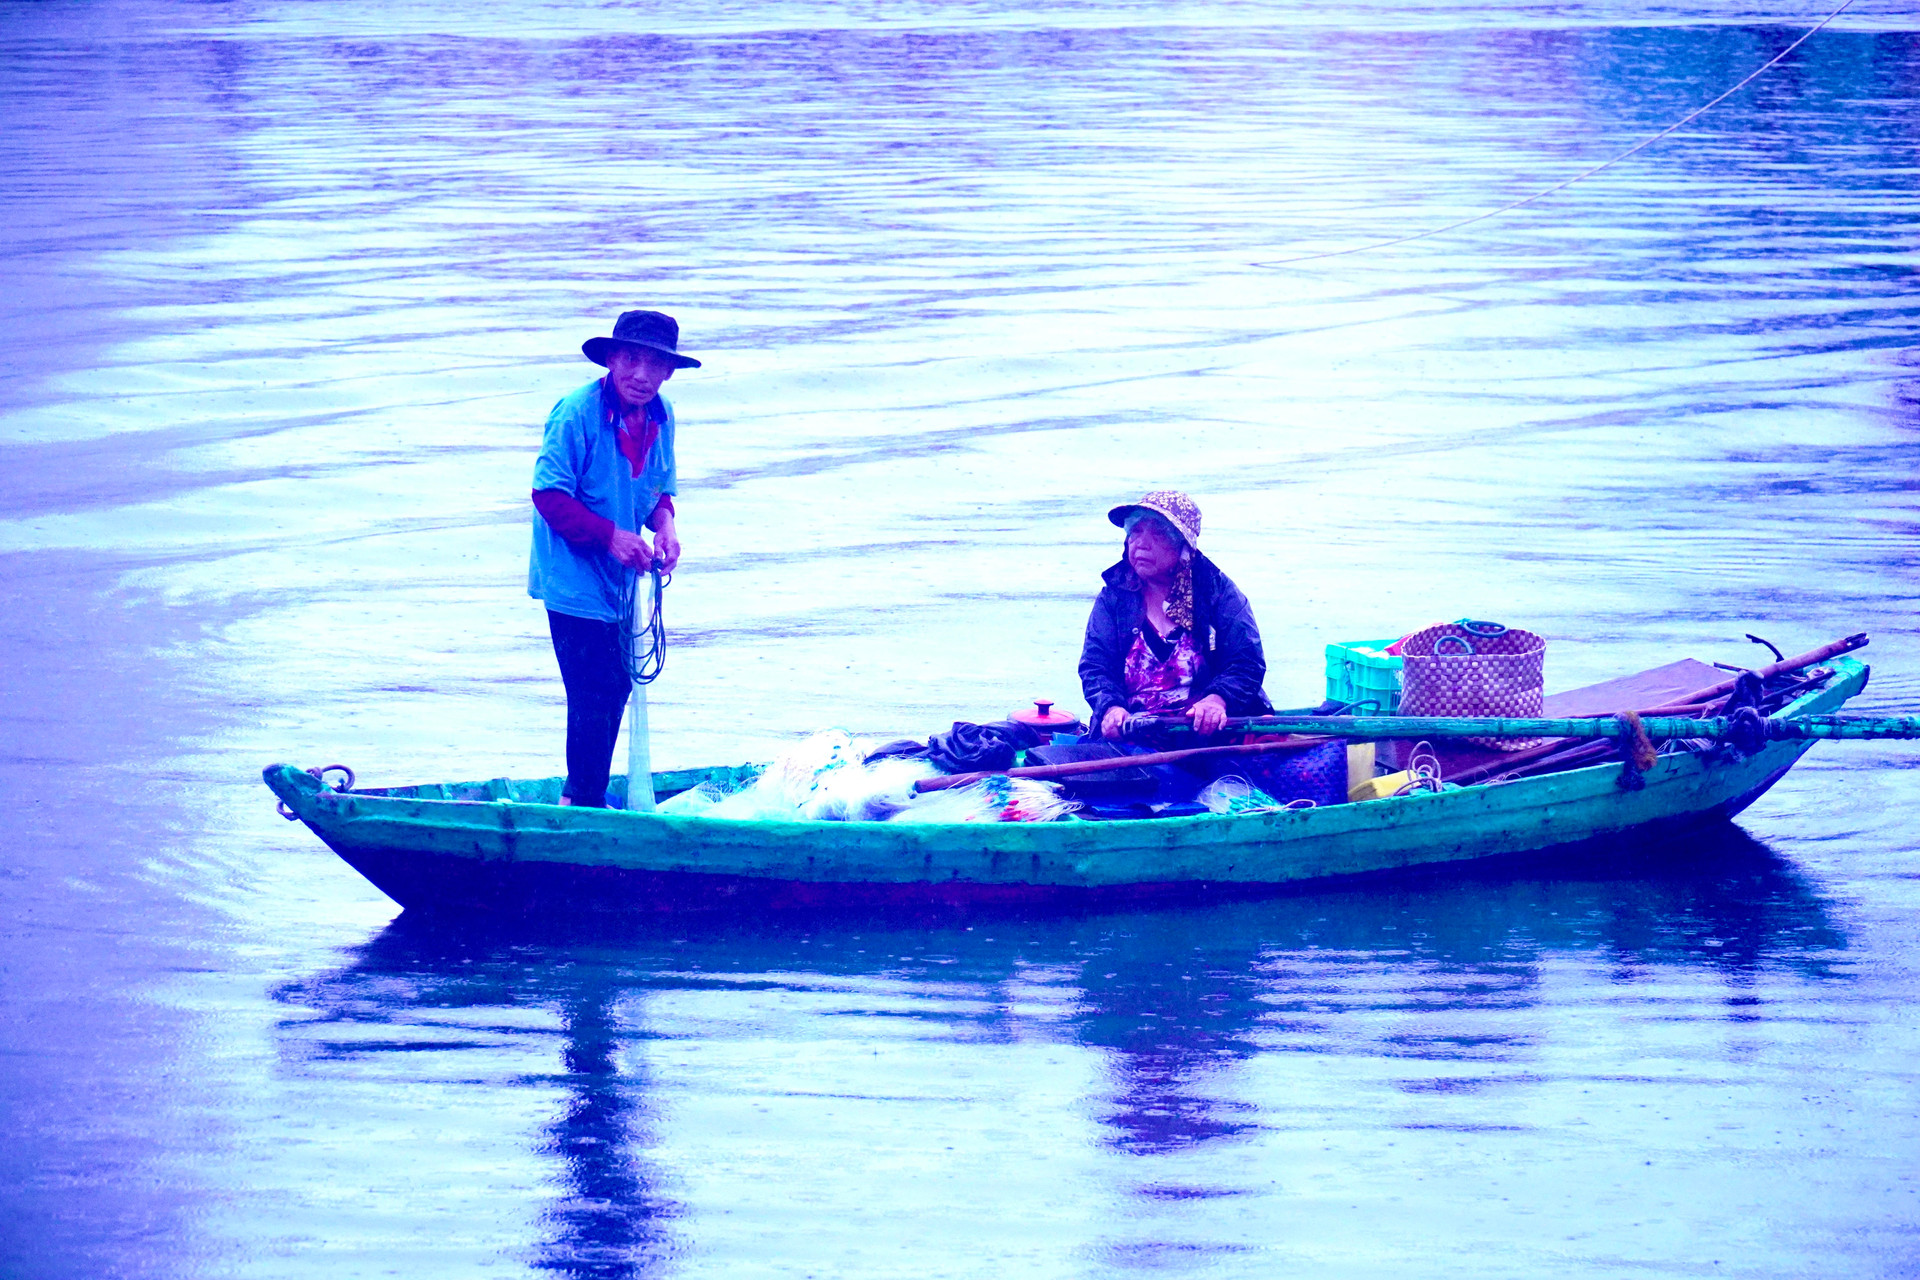 Một dòng sông nổi tiếng dài 76km qua thành phố Phan Phiết của Bình Thuận, có 2 vợ chồng hơn 30 năm đánh cá- Ảnh 2.